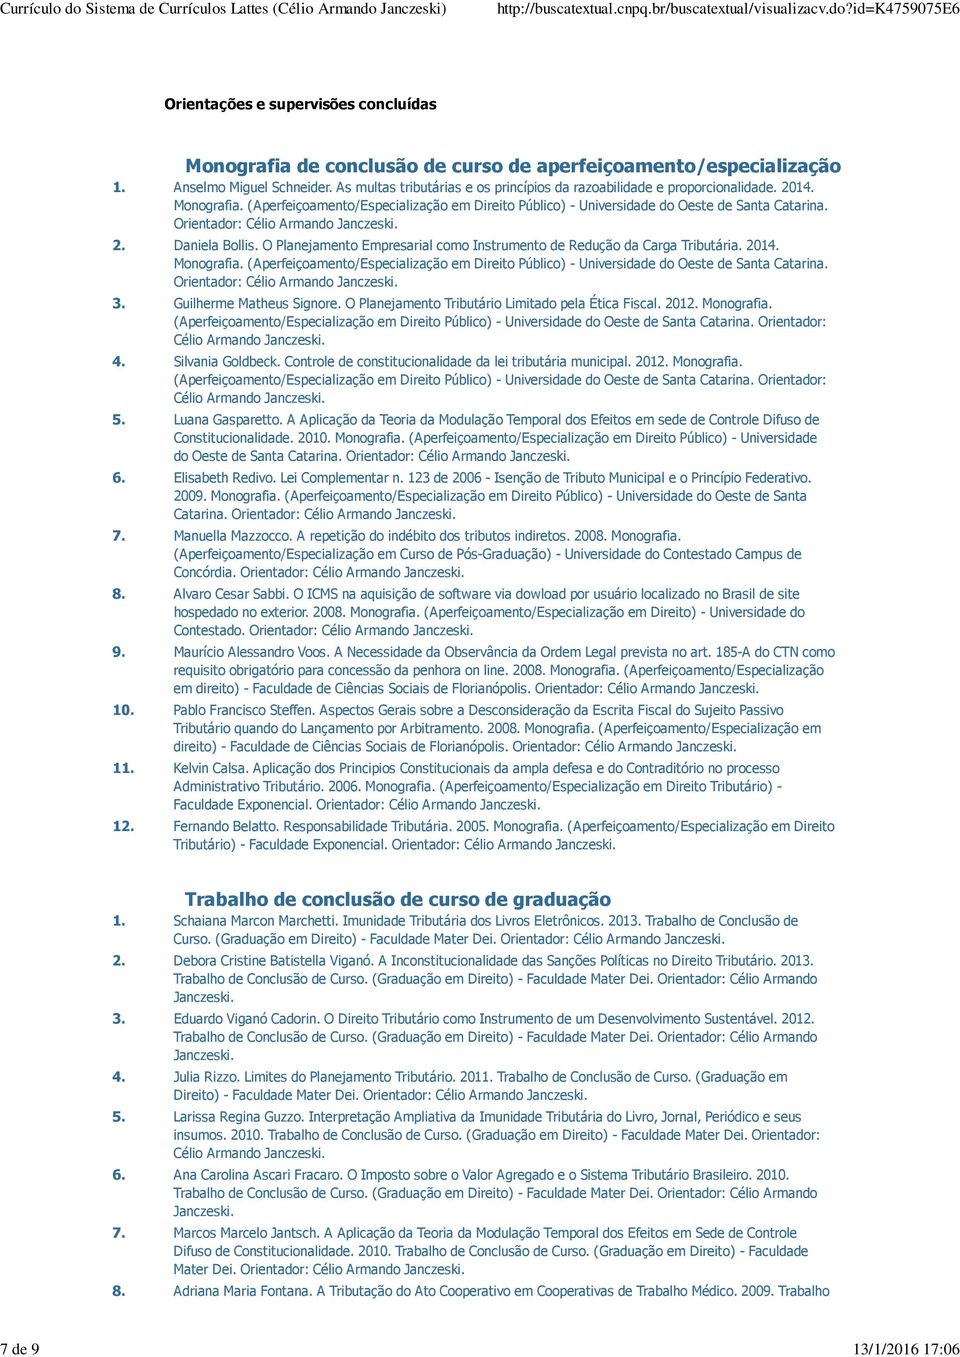 Orientador: 2. Daniela Bollis. O Planejamento Empresarial como Instrumento de Redução da Carga Tributária. 2014. Monografia.